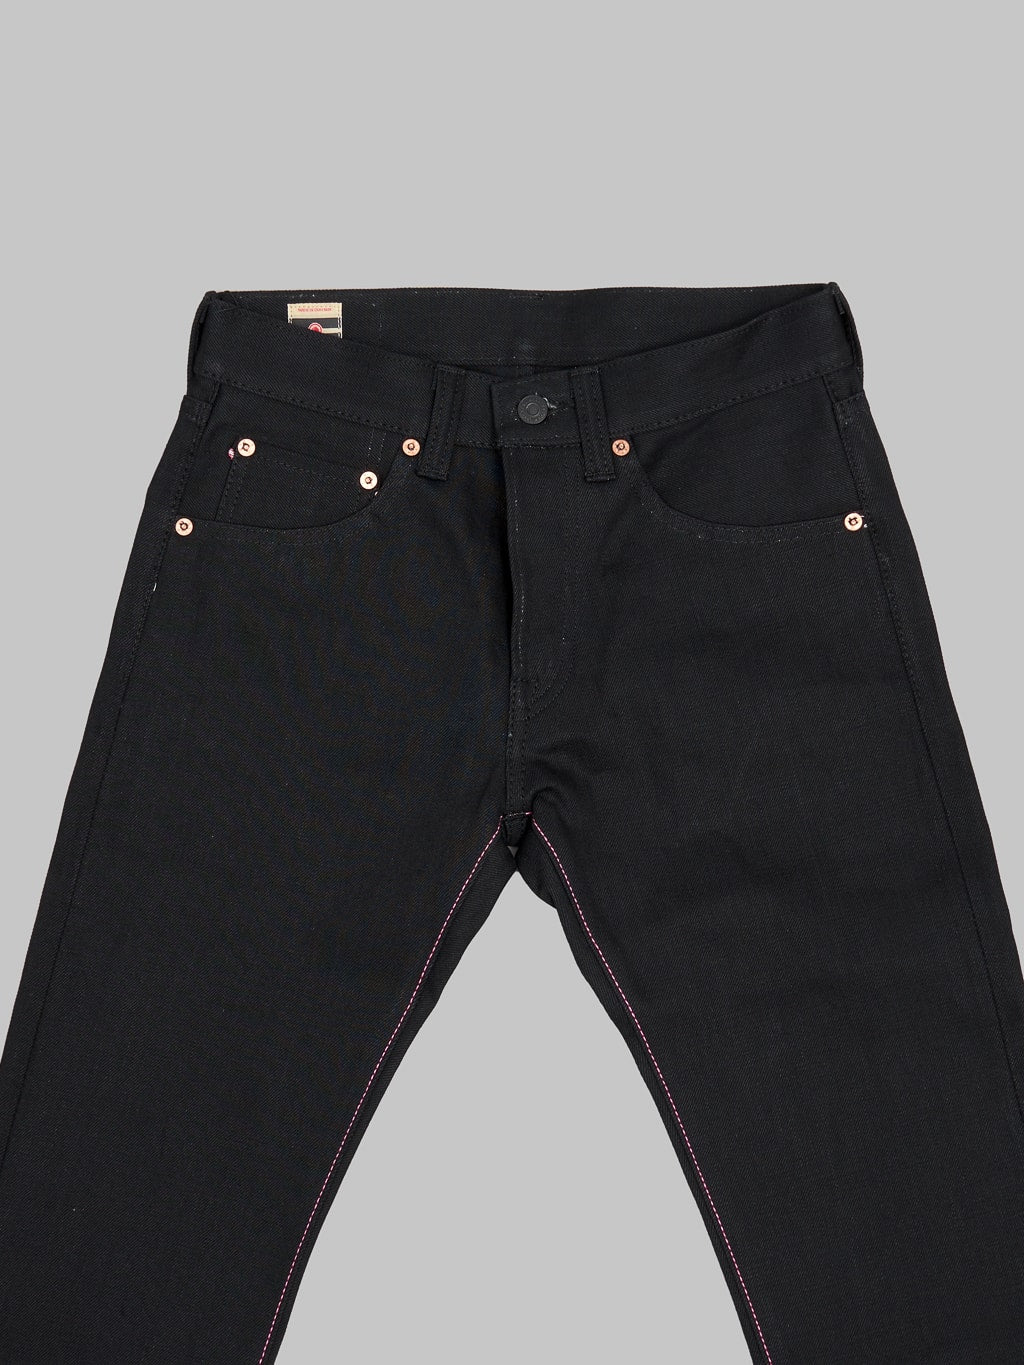 Momotaro 0306B Black x Black Tight Tapered Jeans waist